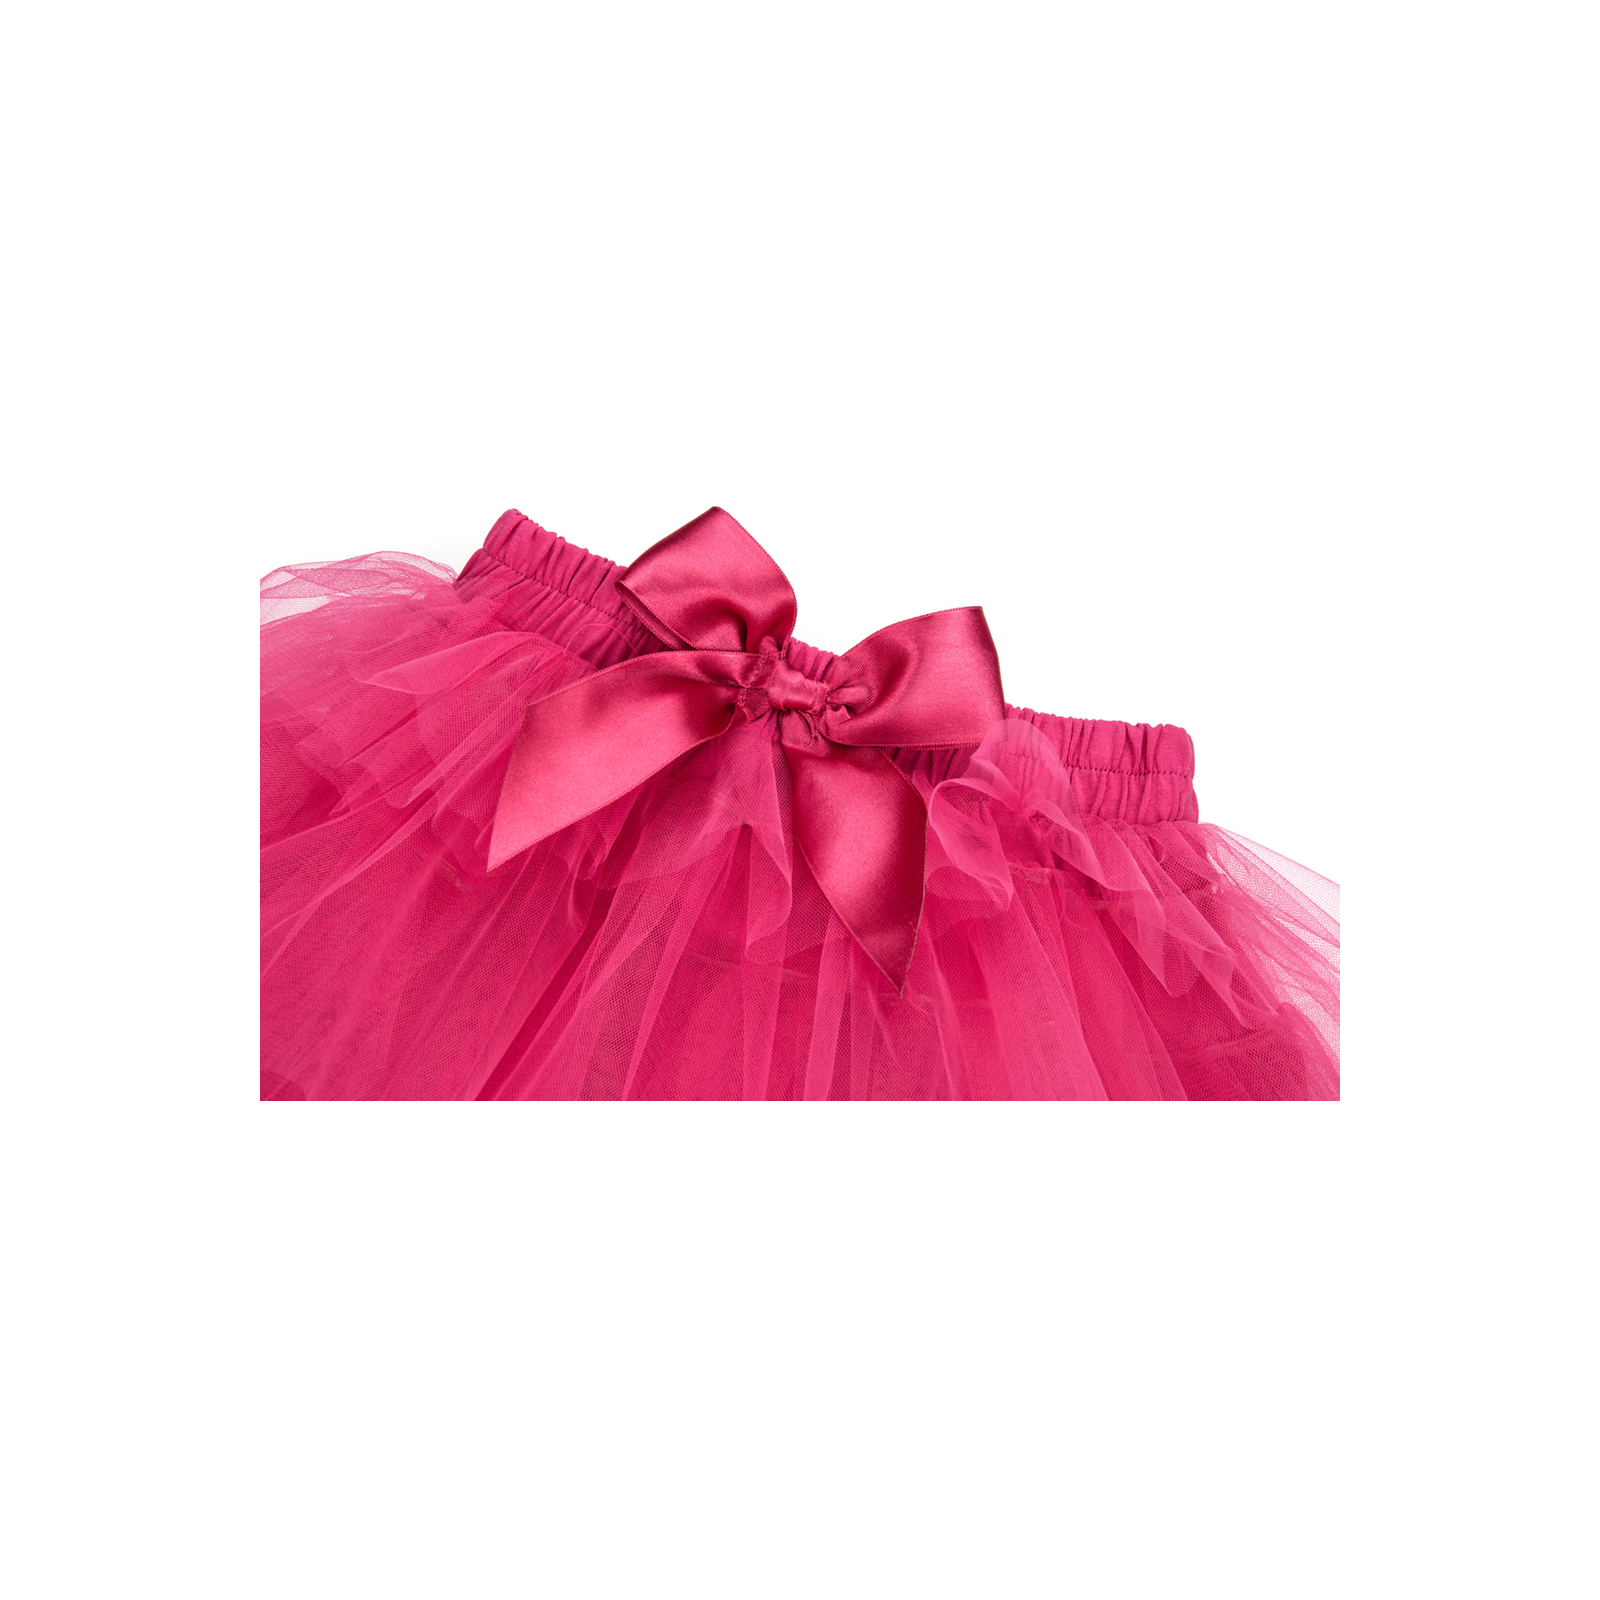 Юбка Breeze фатиновая многослойная (5338-110G-pink) изображение 2